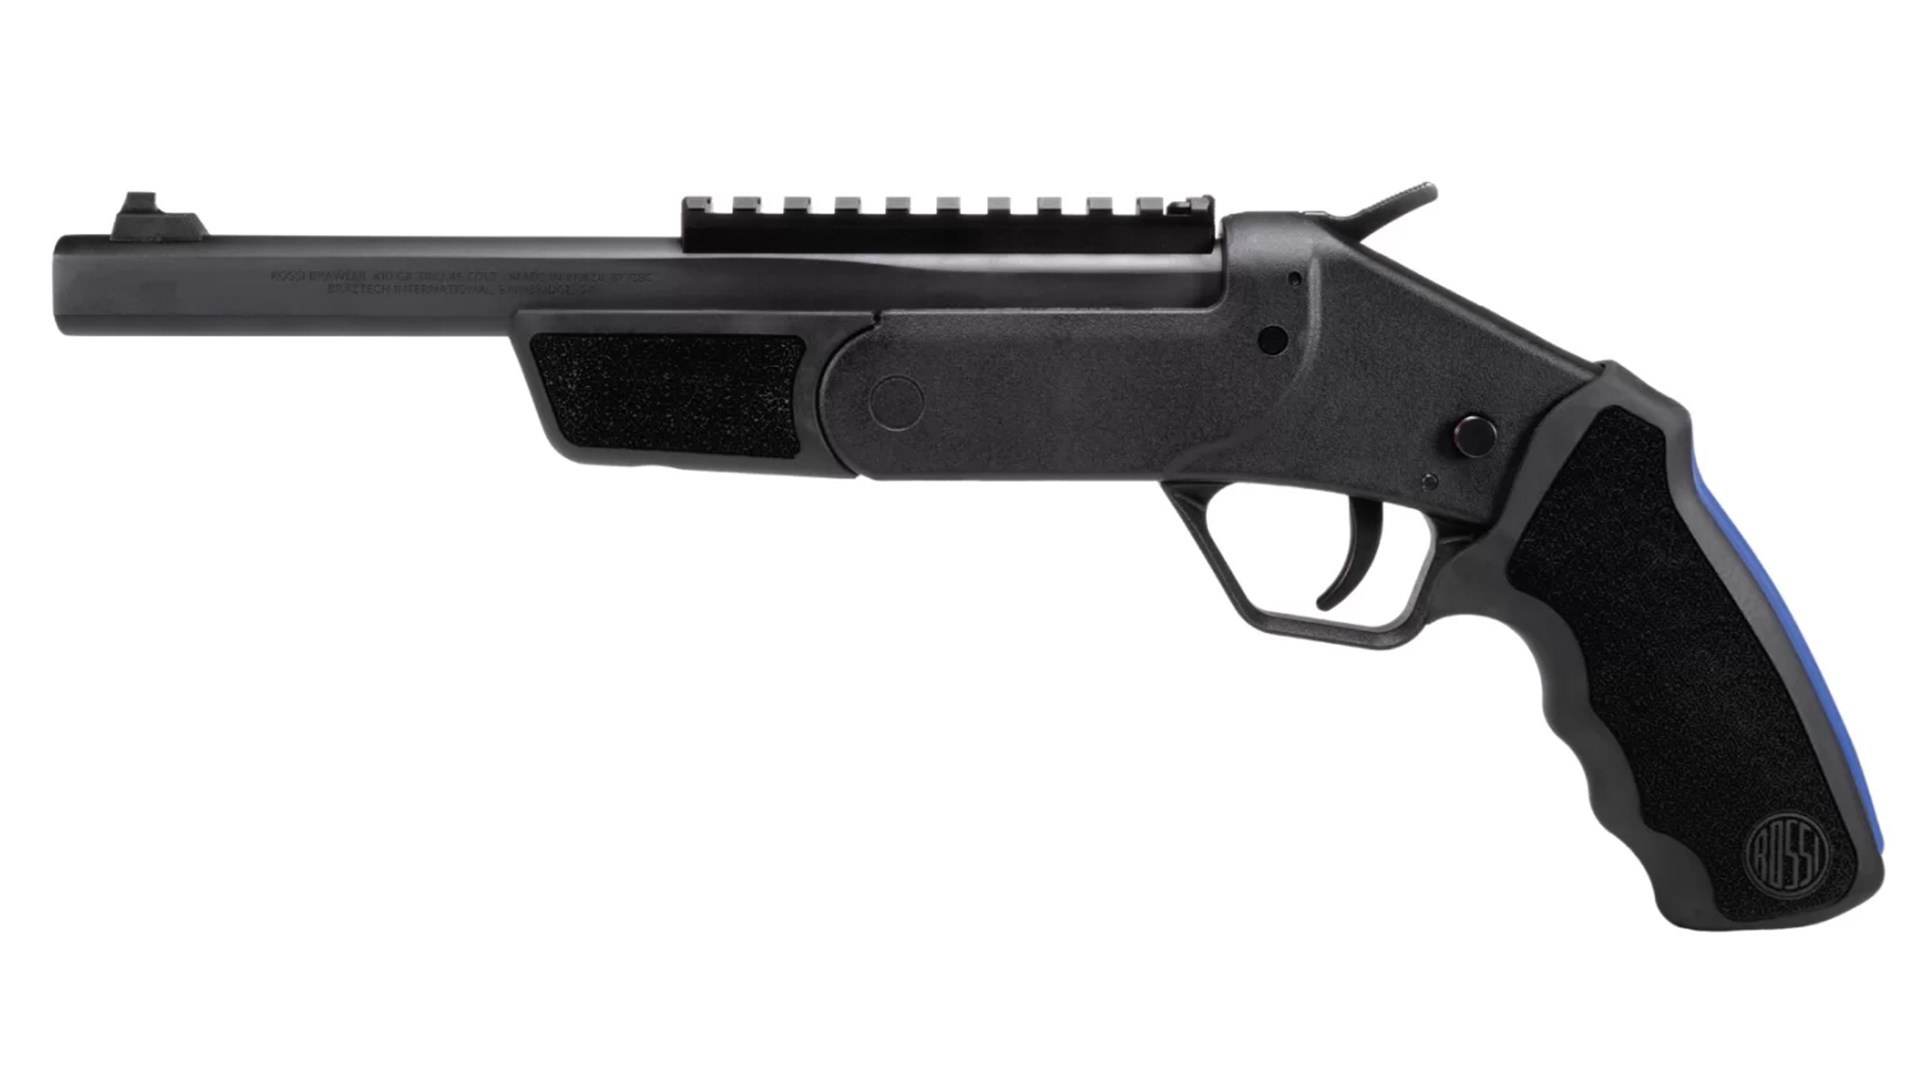 Left side of the all-black Rossi Brawler pistol.